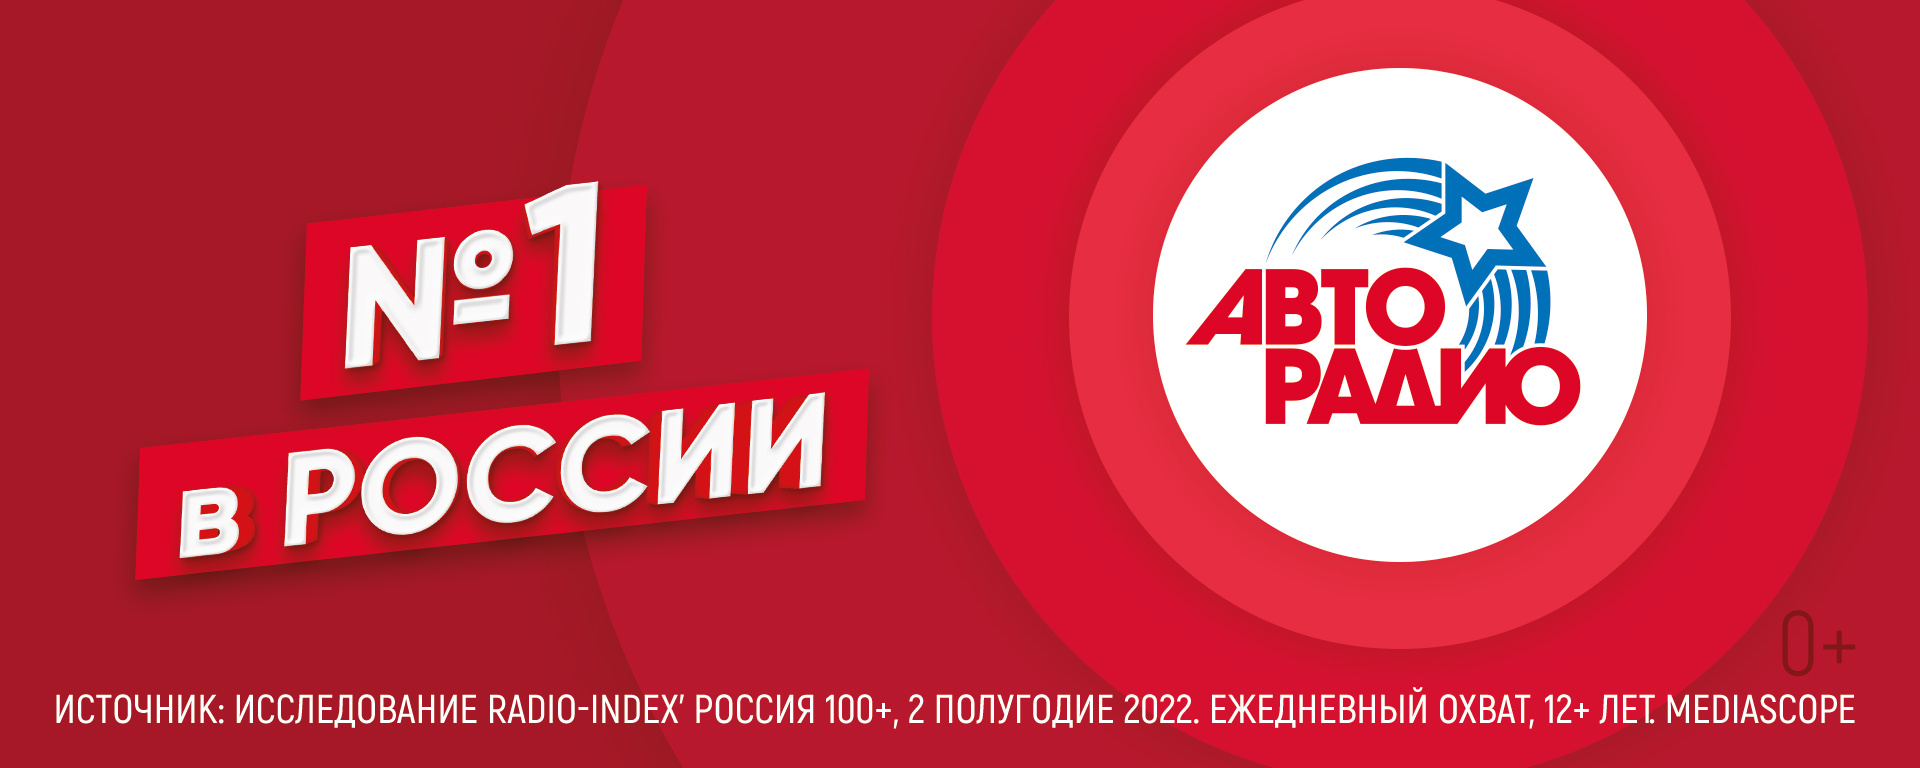 Во втором полугодии 2022 года россияне чаще других радиостанций слушали «Авторадио»